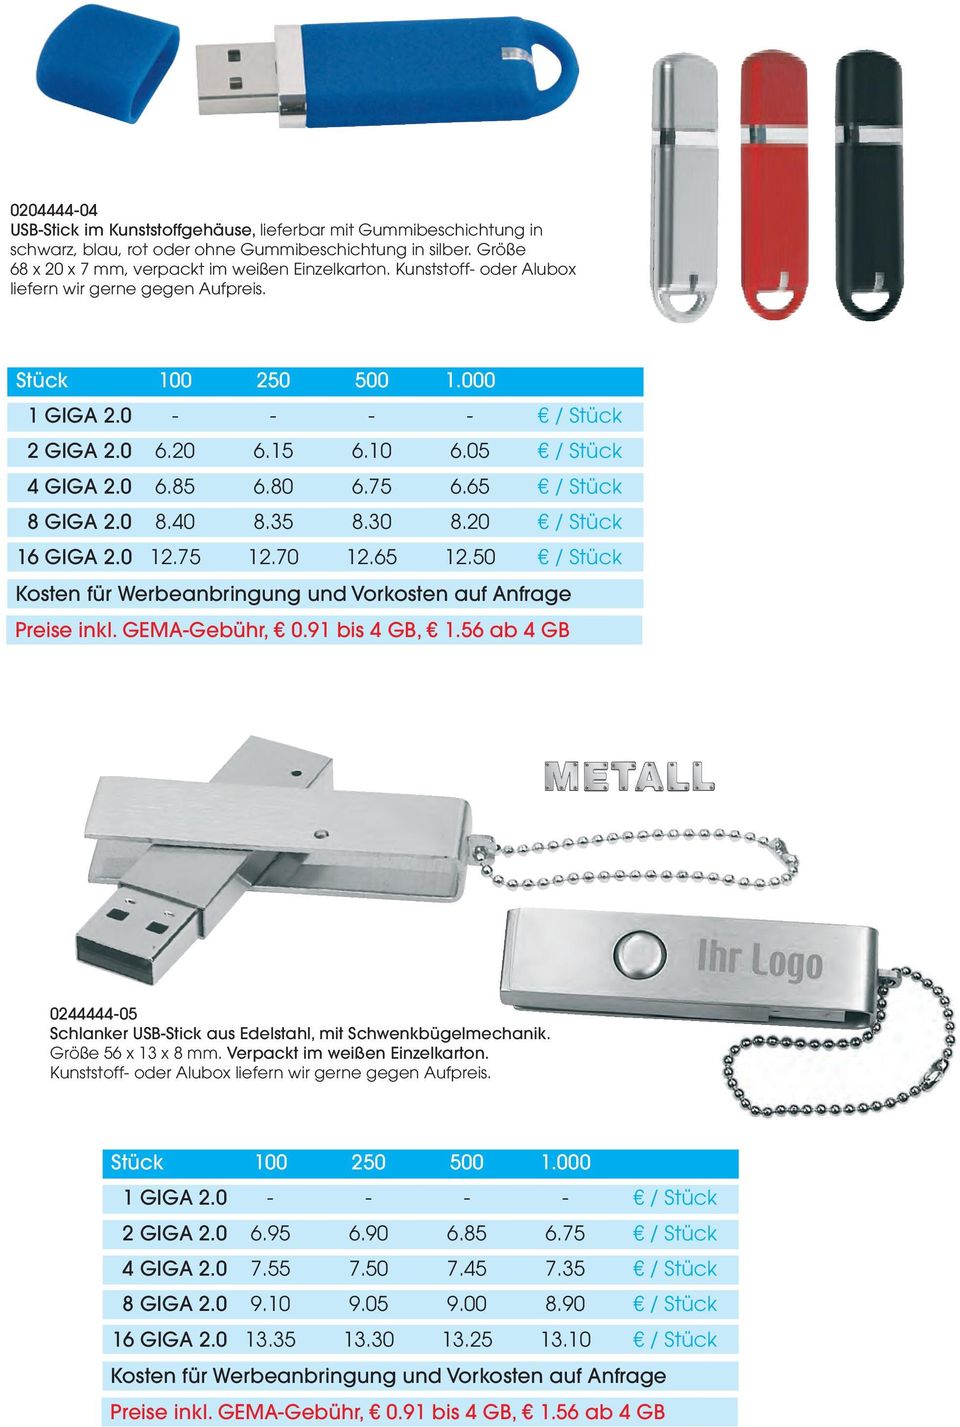 0244444-05 Schlanker USB-Stick aus Edelstahl, mit Schwenkbügelmechanik. Größe 56 x 13 x 8 mm. Verpackt im weißen Einzelkarton.